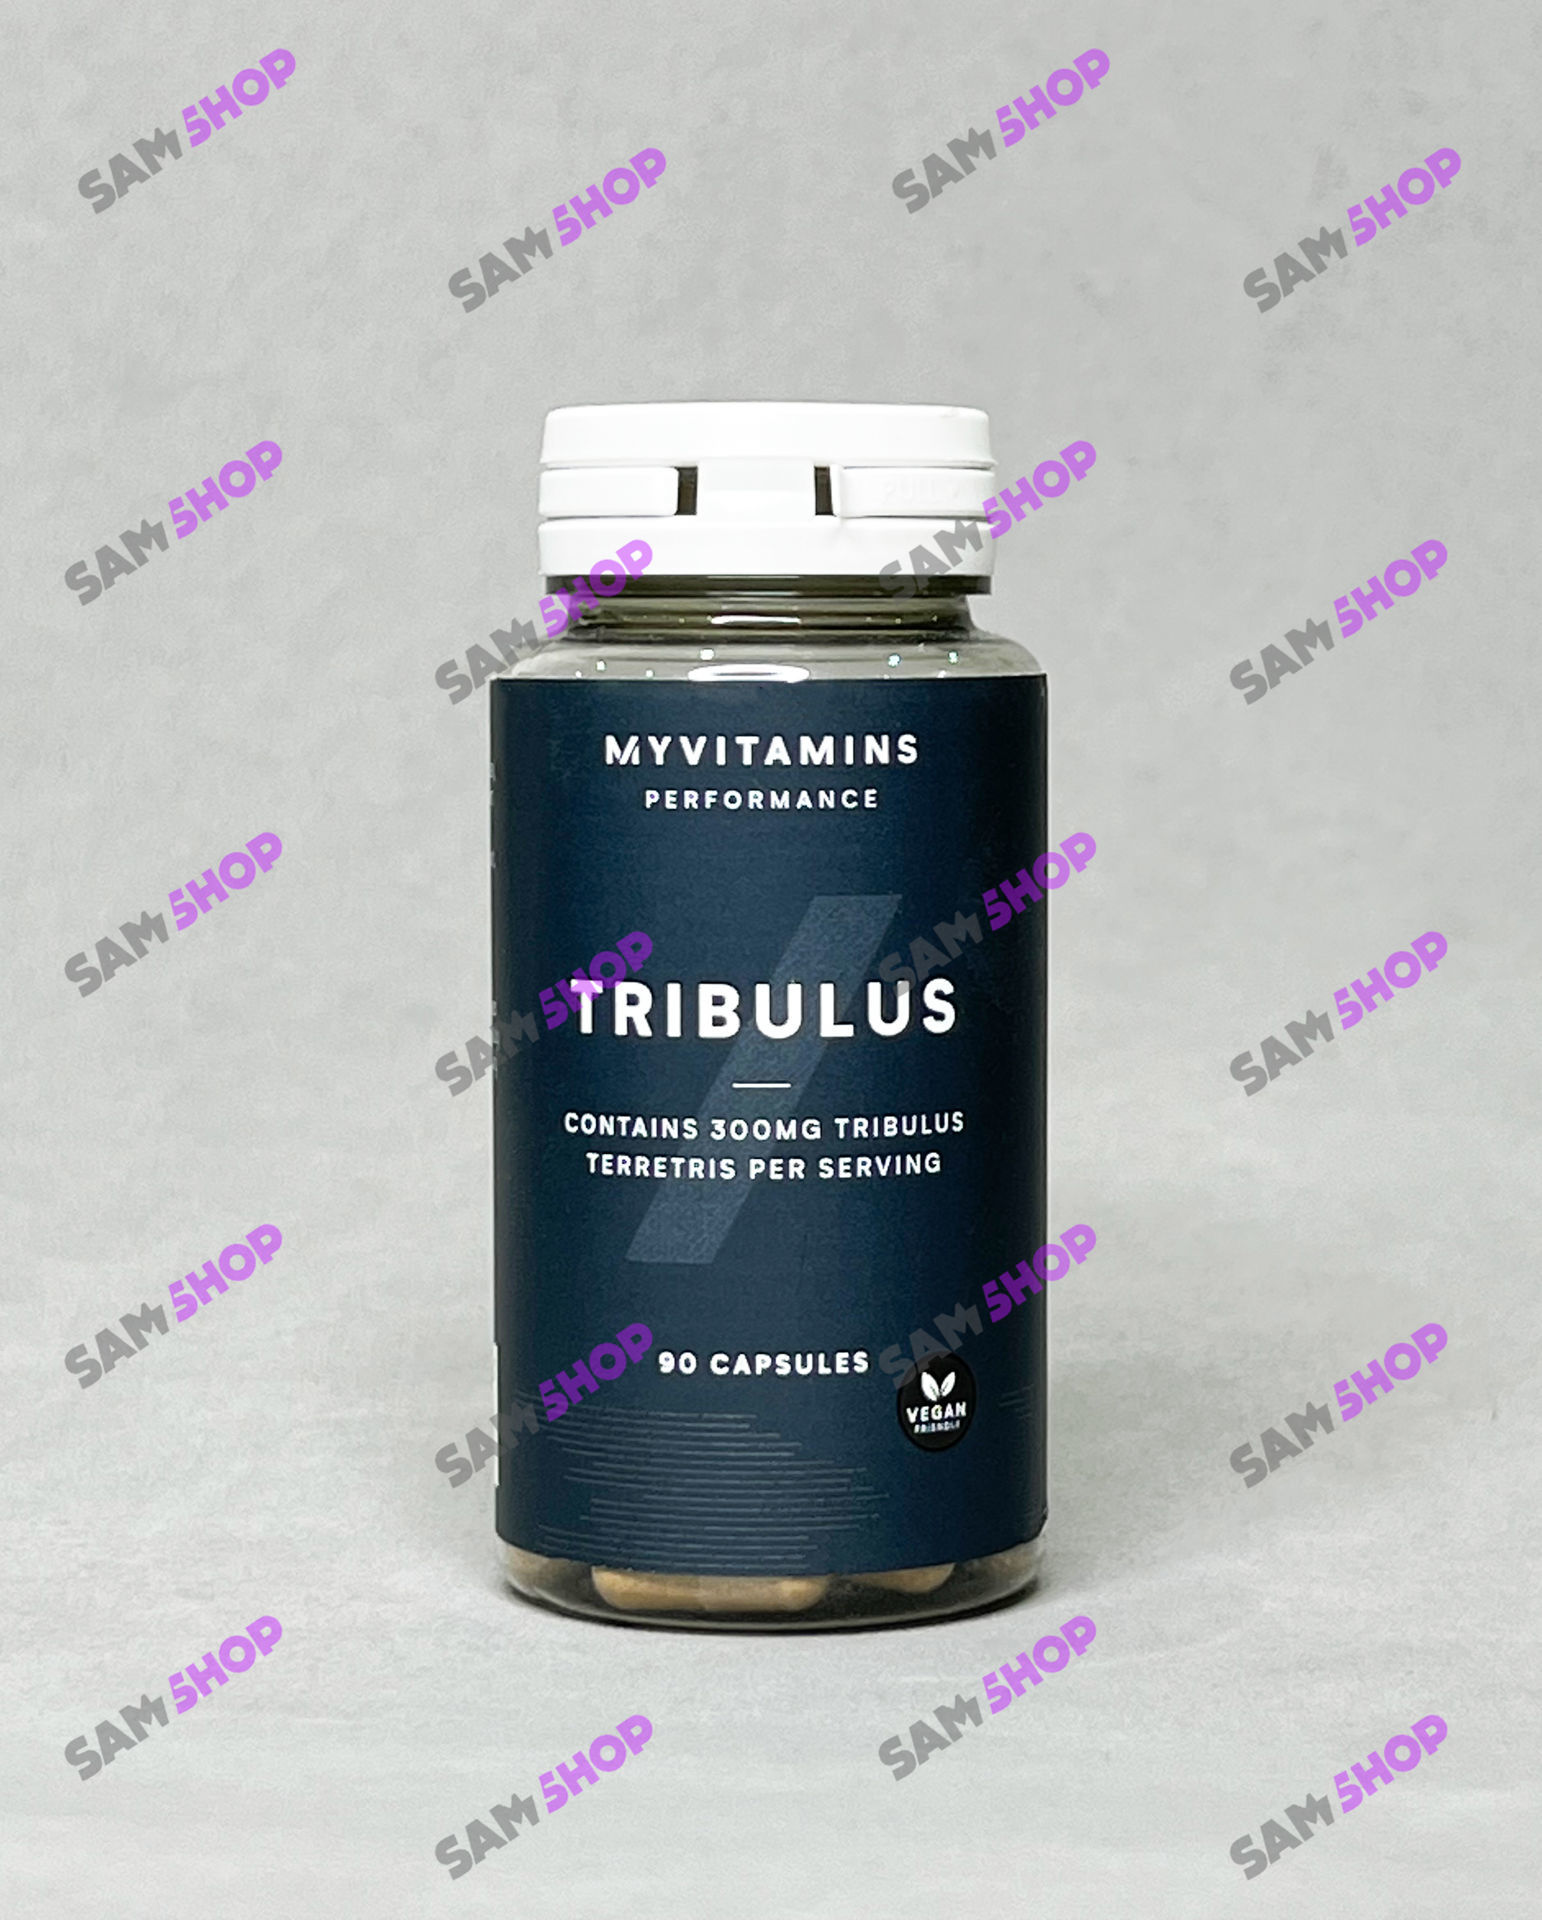 مای ویتامین تریبلوس - My Vitamin Tribulus